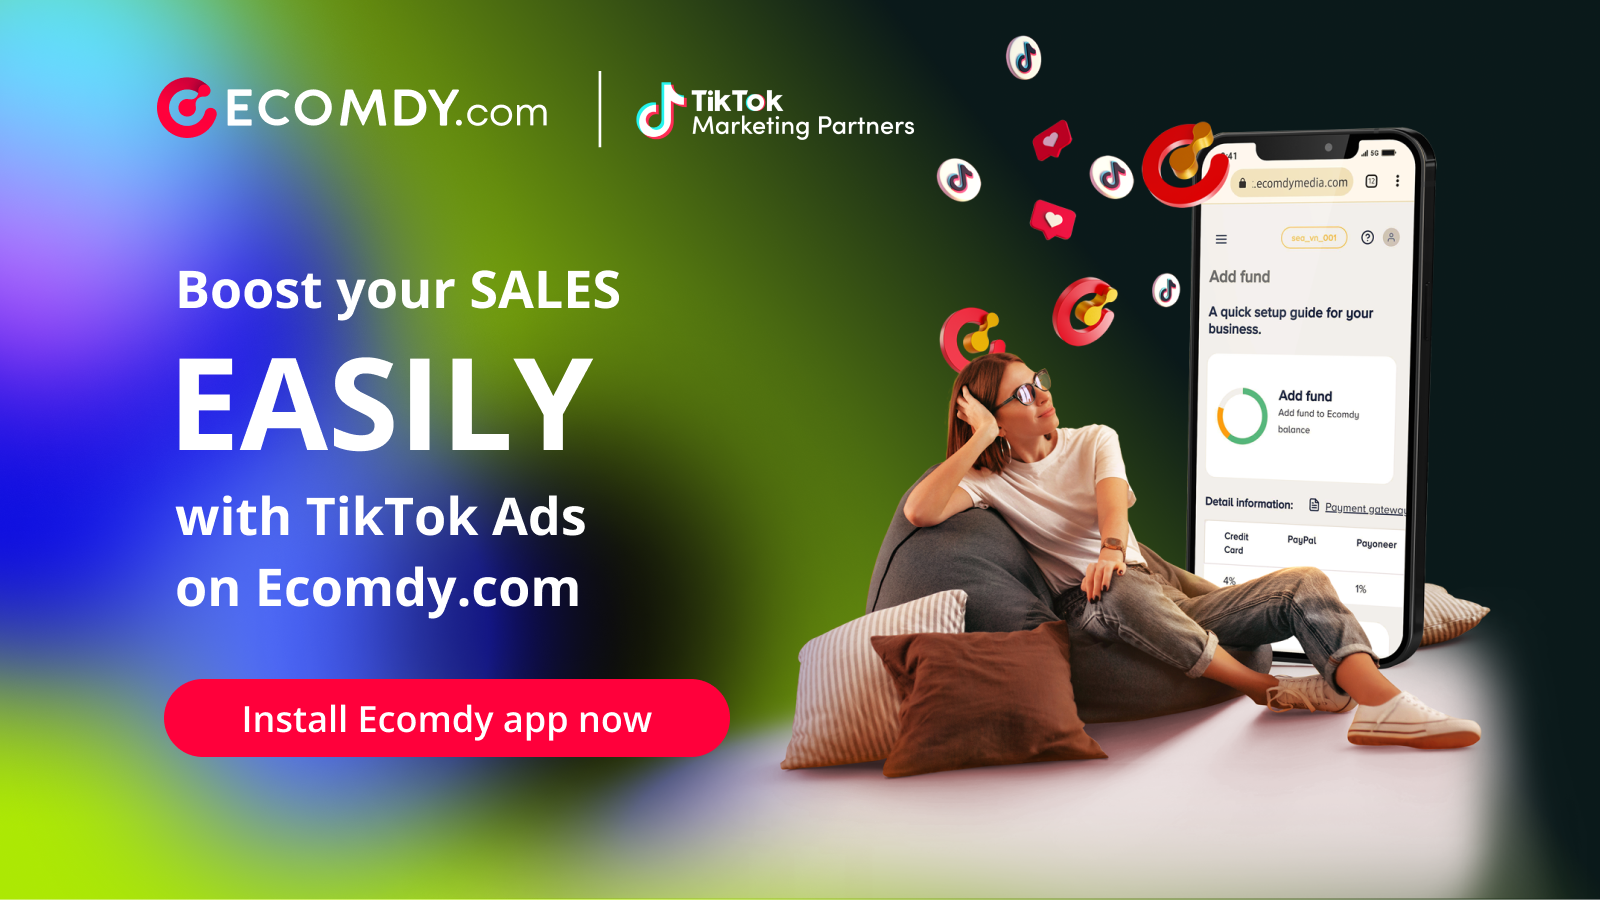 在Ecomdy.com上使用TikTok广告轻松提升销售